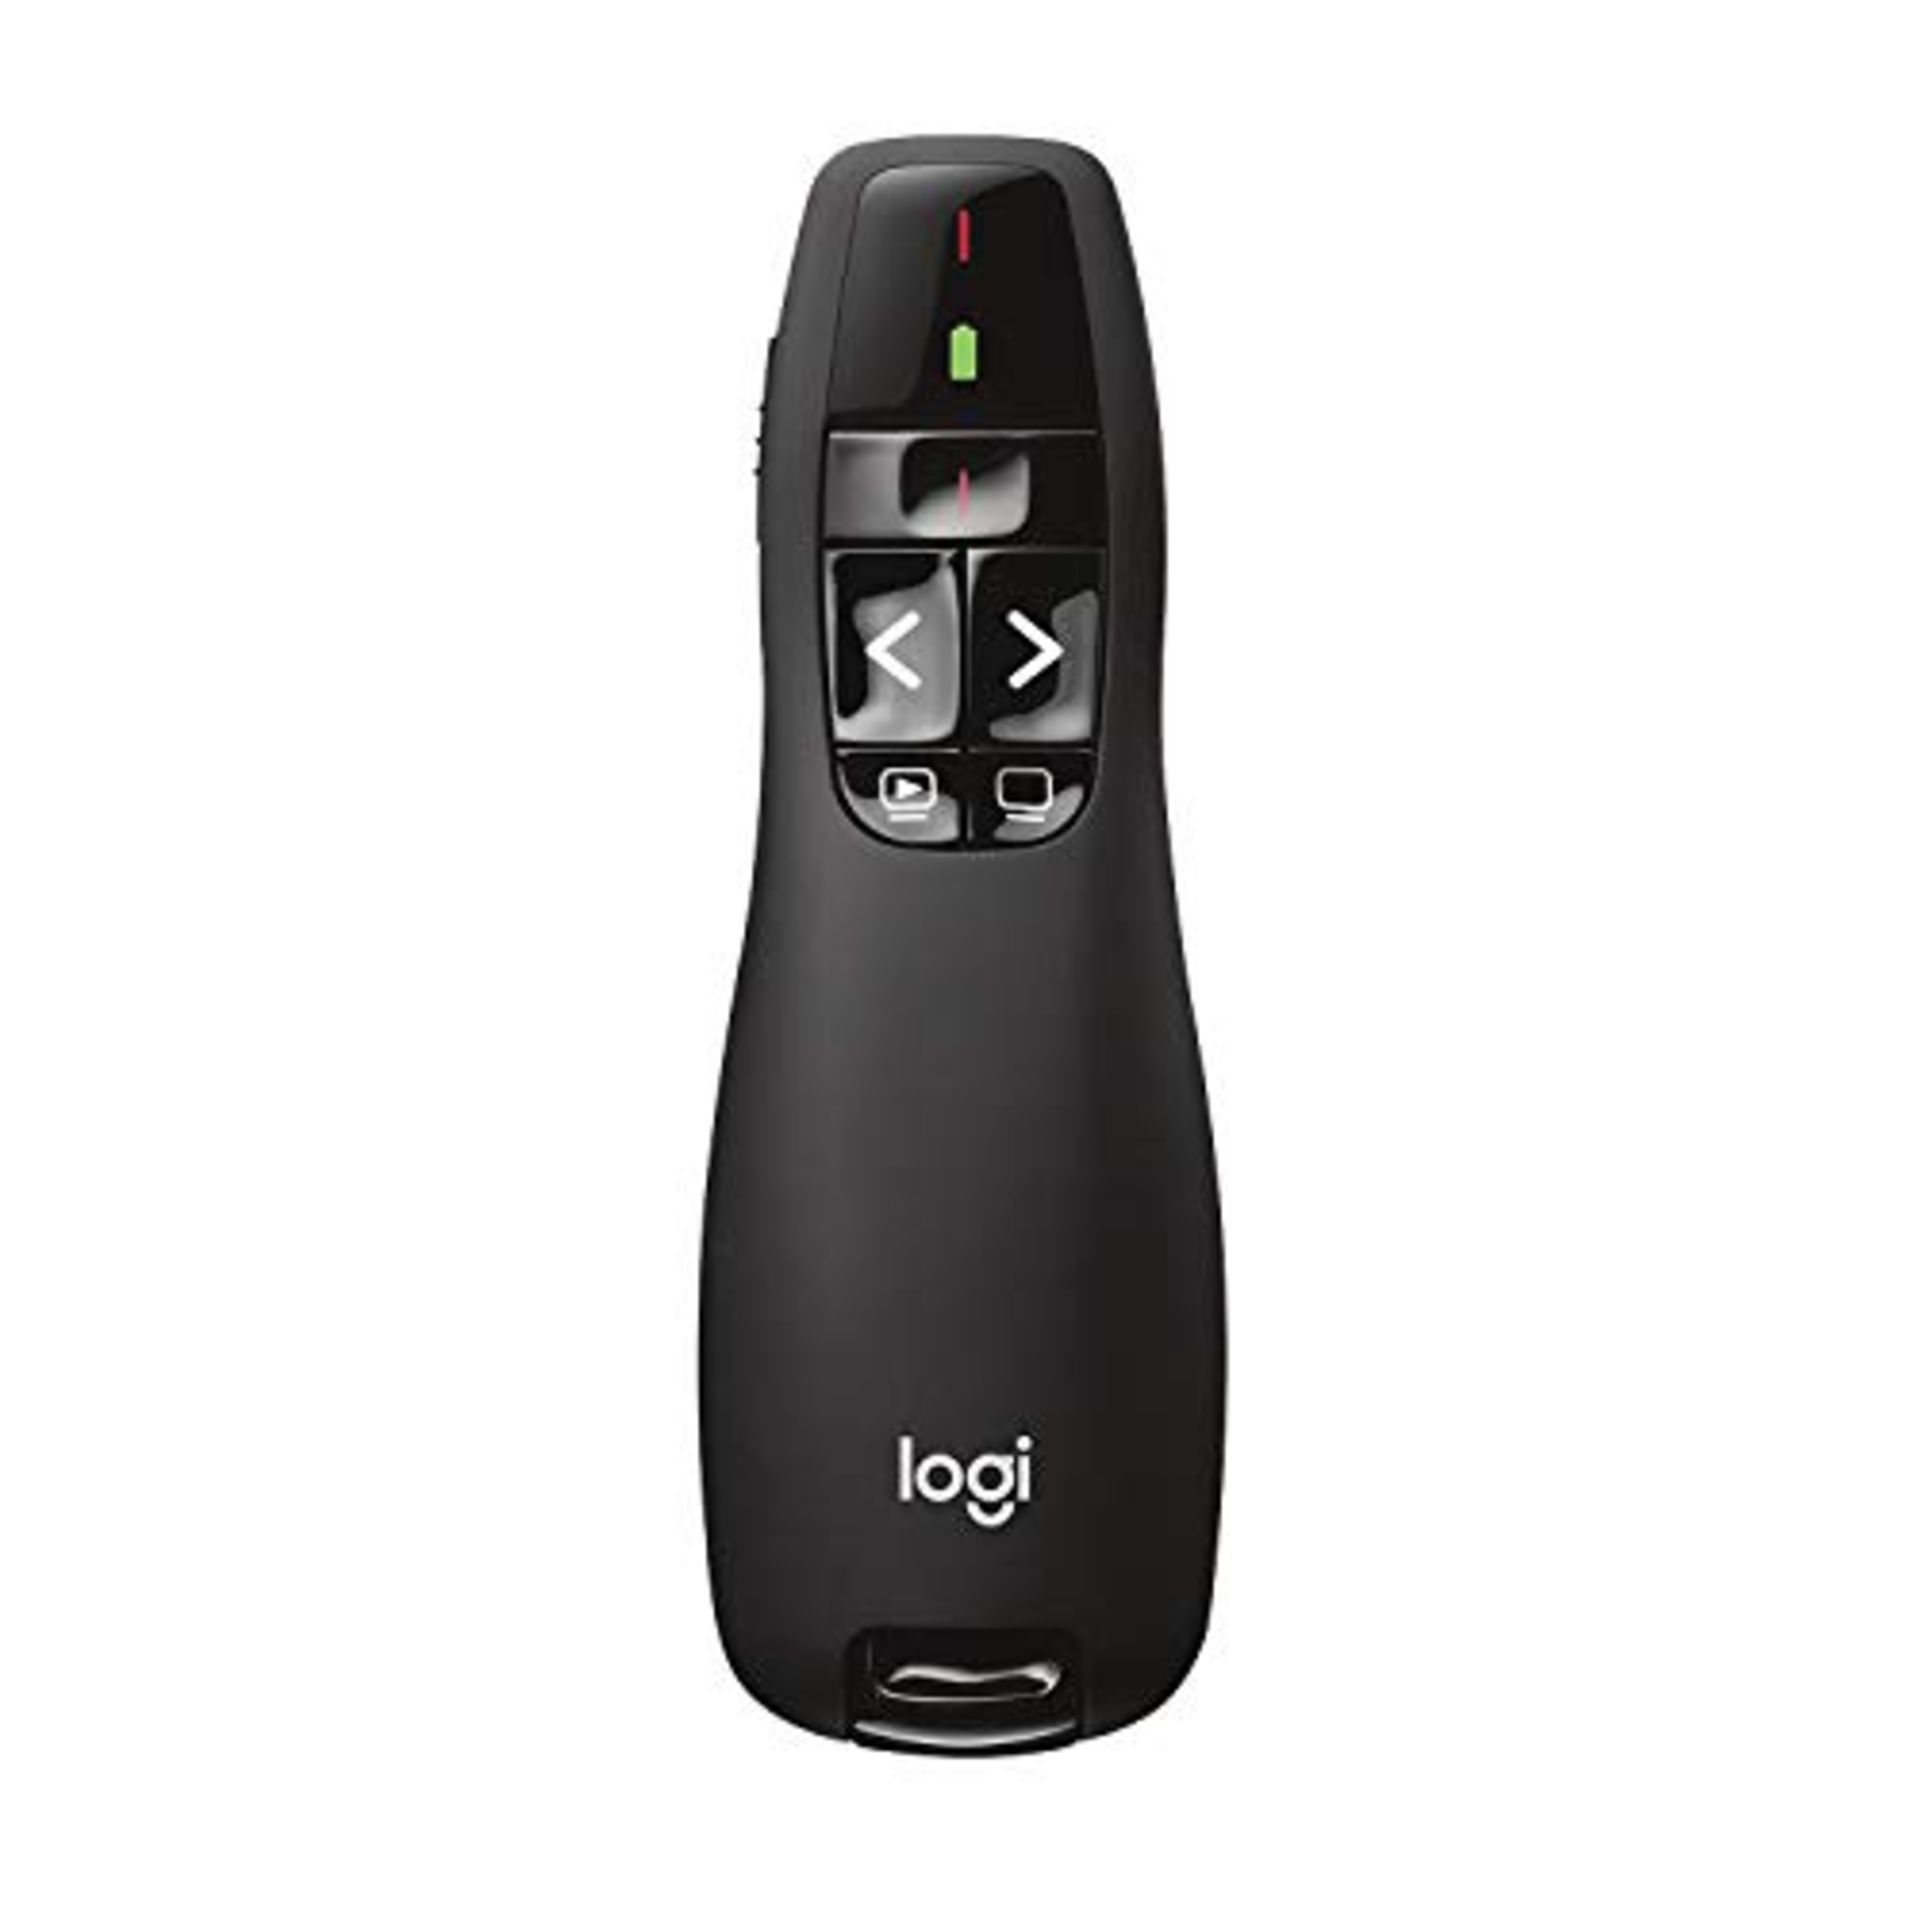 Logitech R400 Wireless Presentation Remote, 2.4 GHz/USB Receiver, Red Laser Pointer, 1